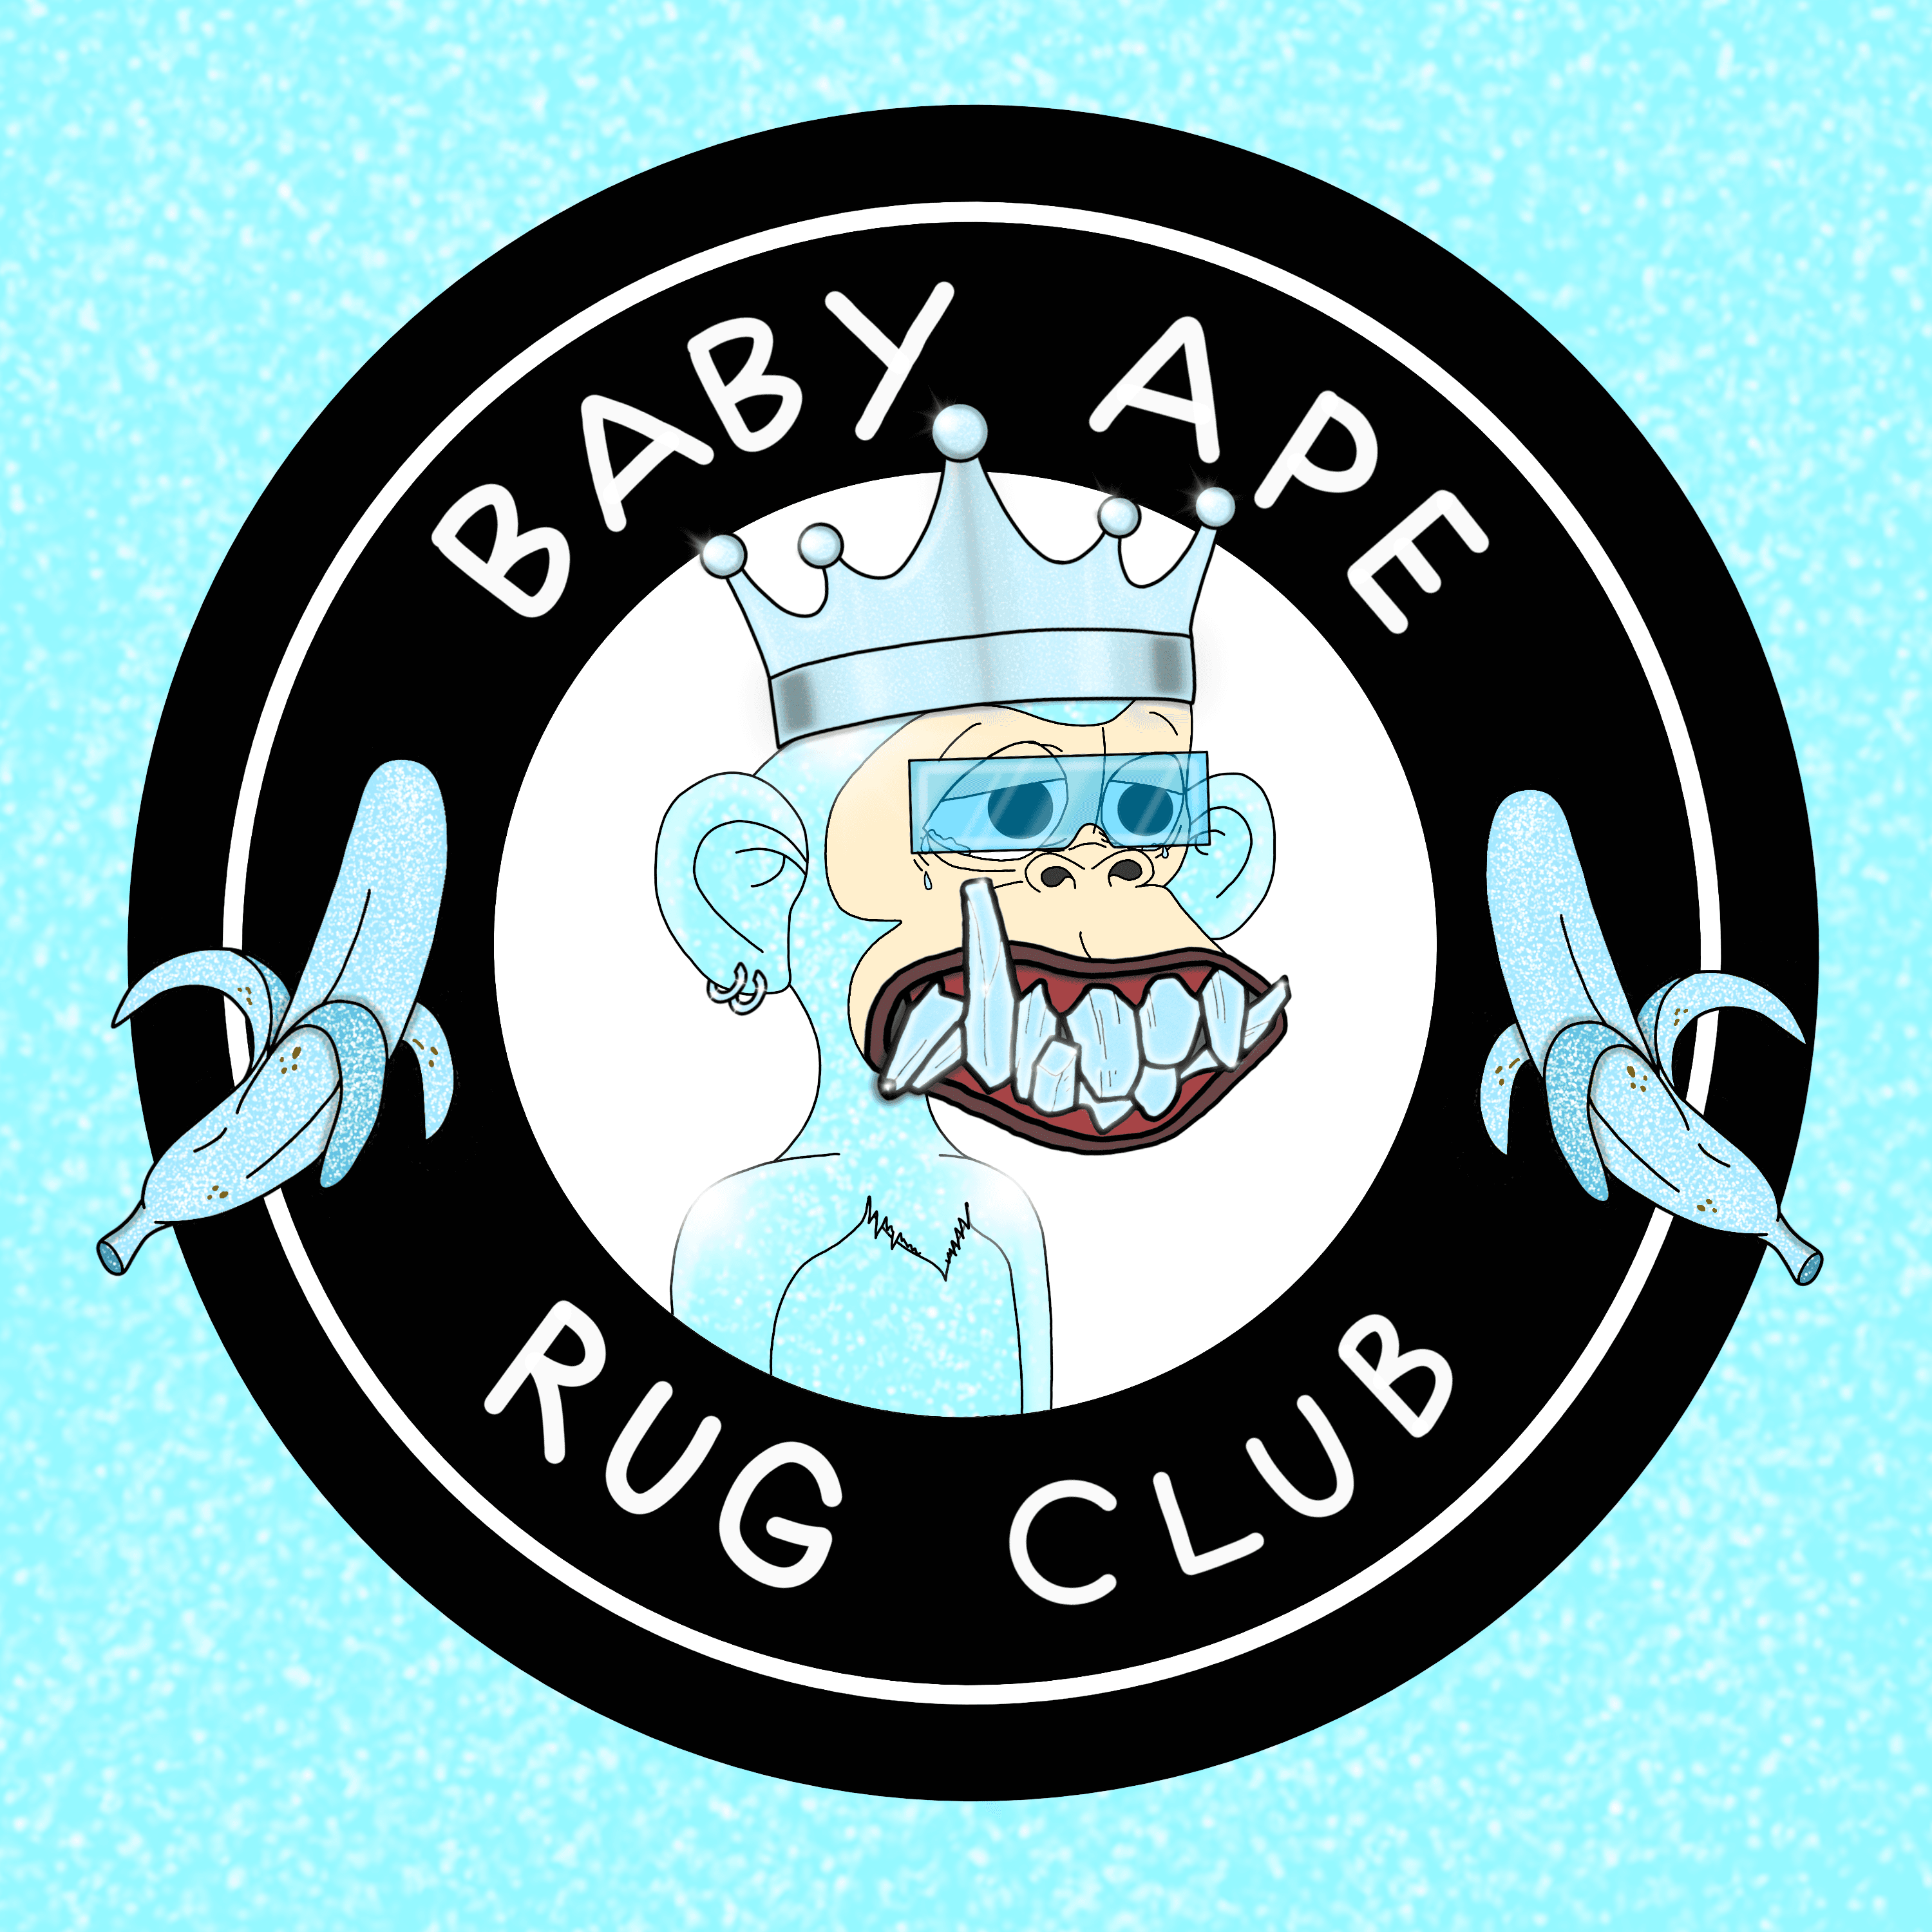 BabyApeRugClub